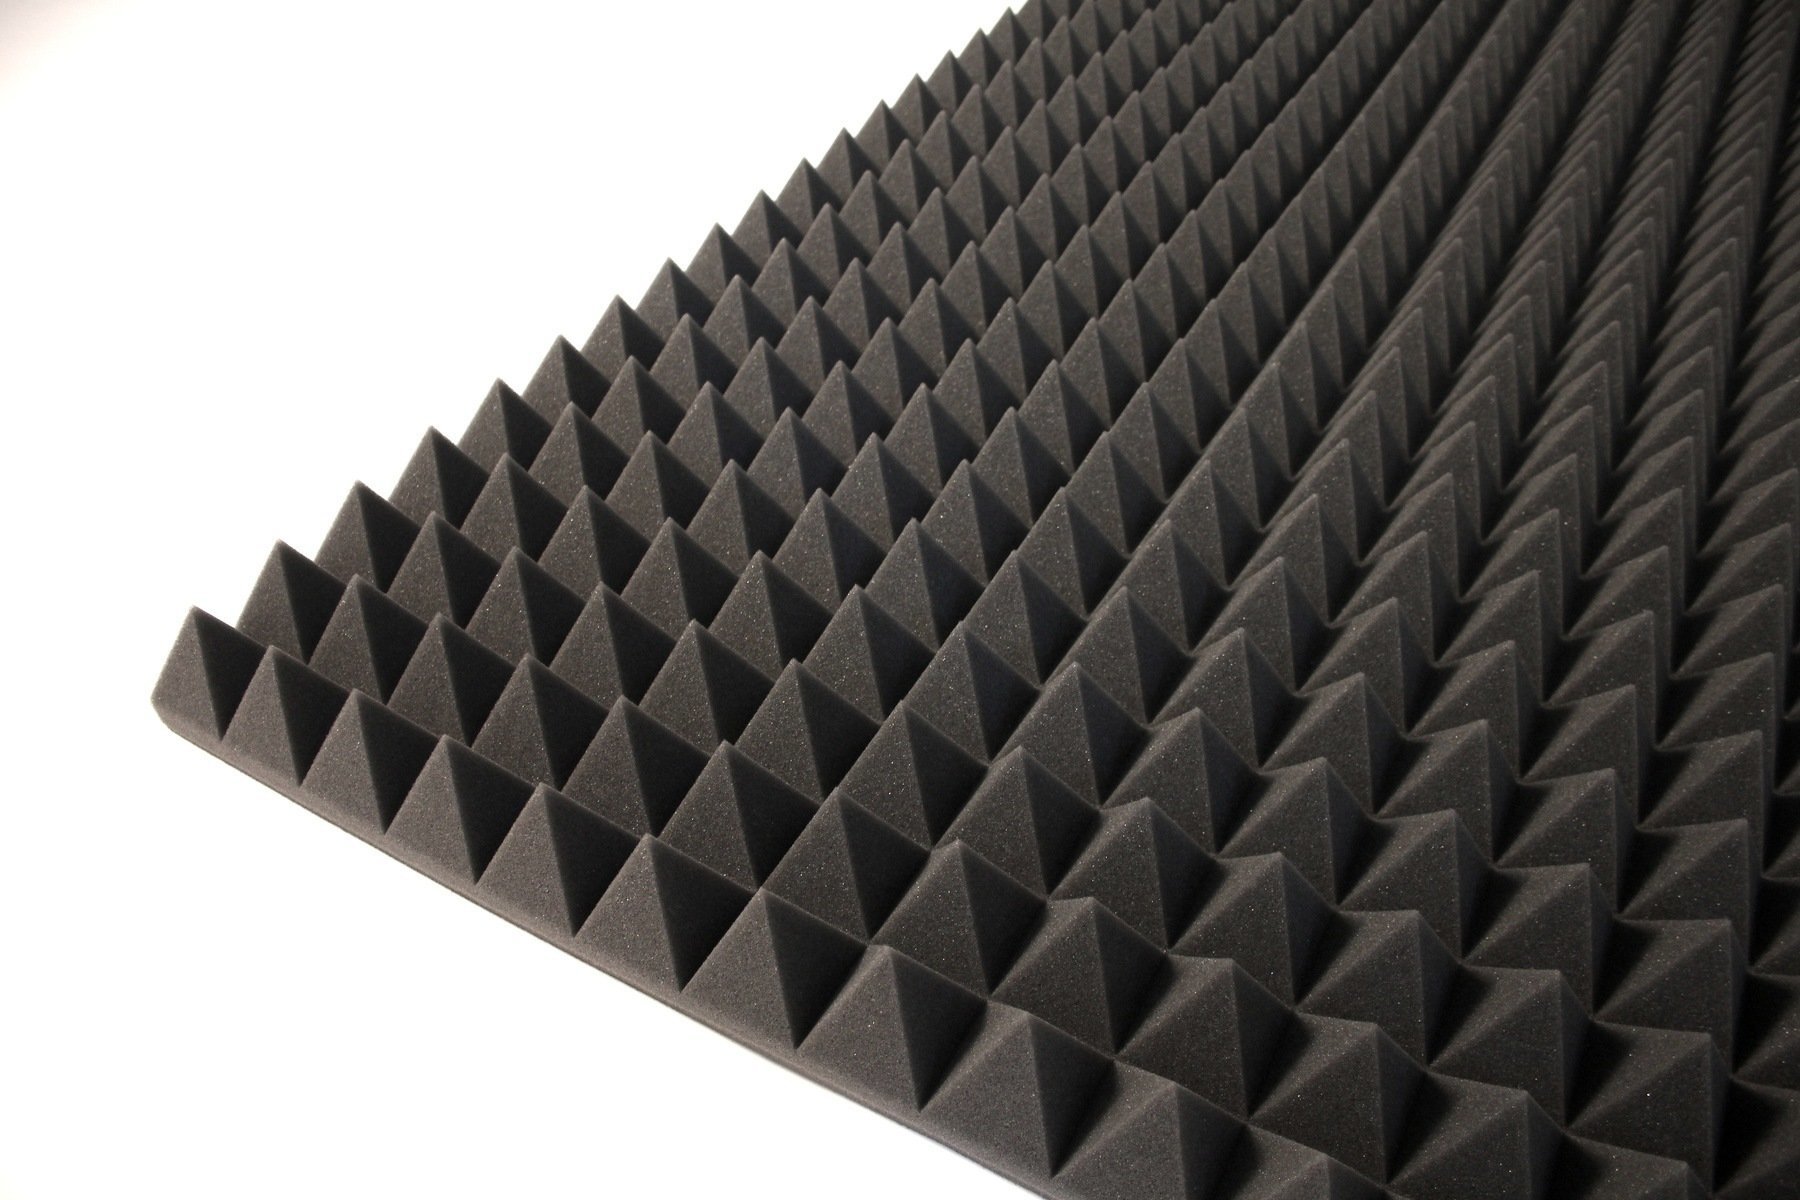 Absorpčný panel penový Alfacoustic Pyramids 7cm Fire Retardant